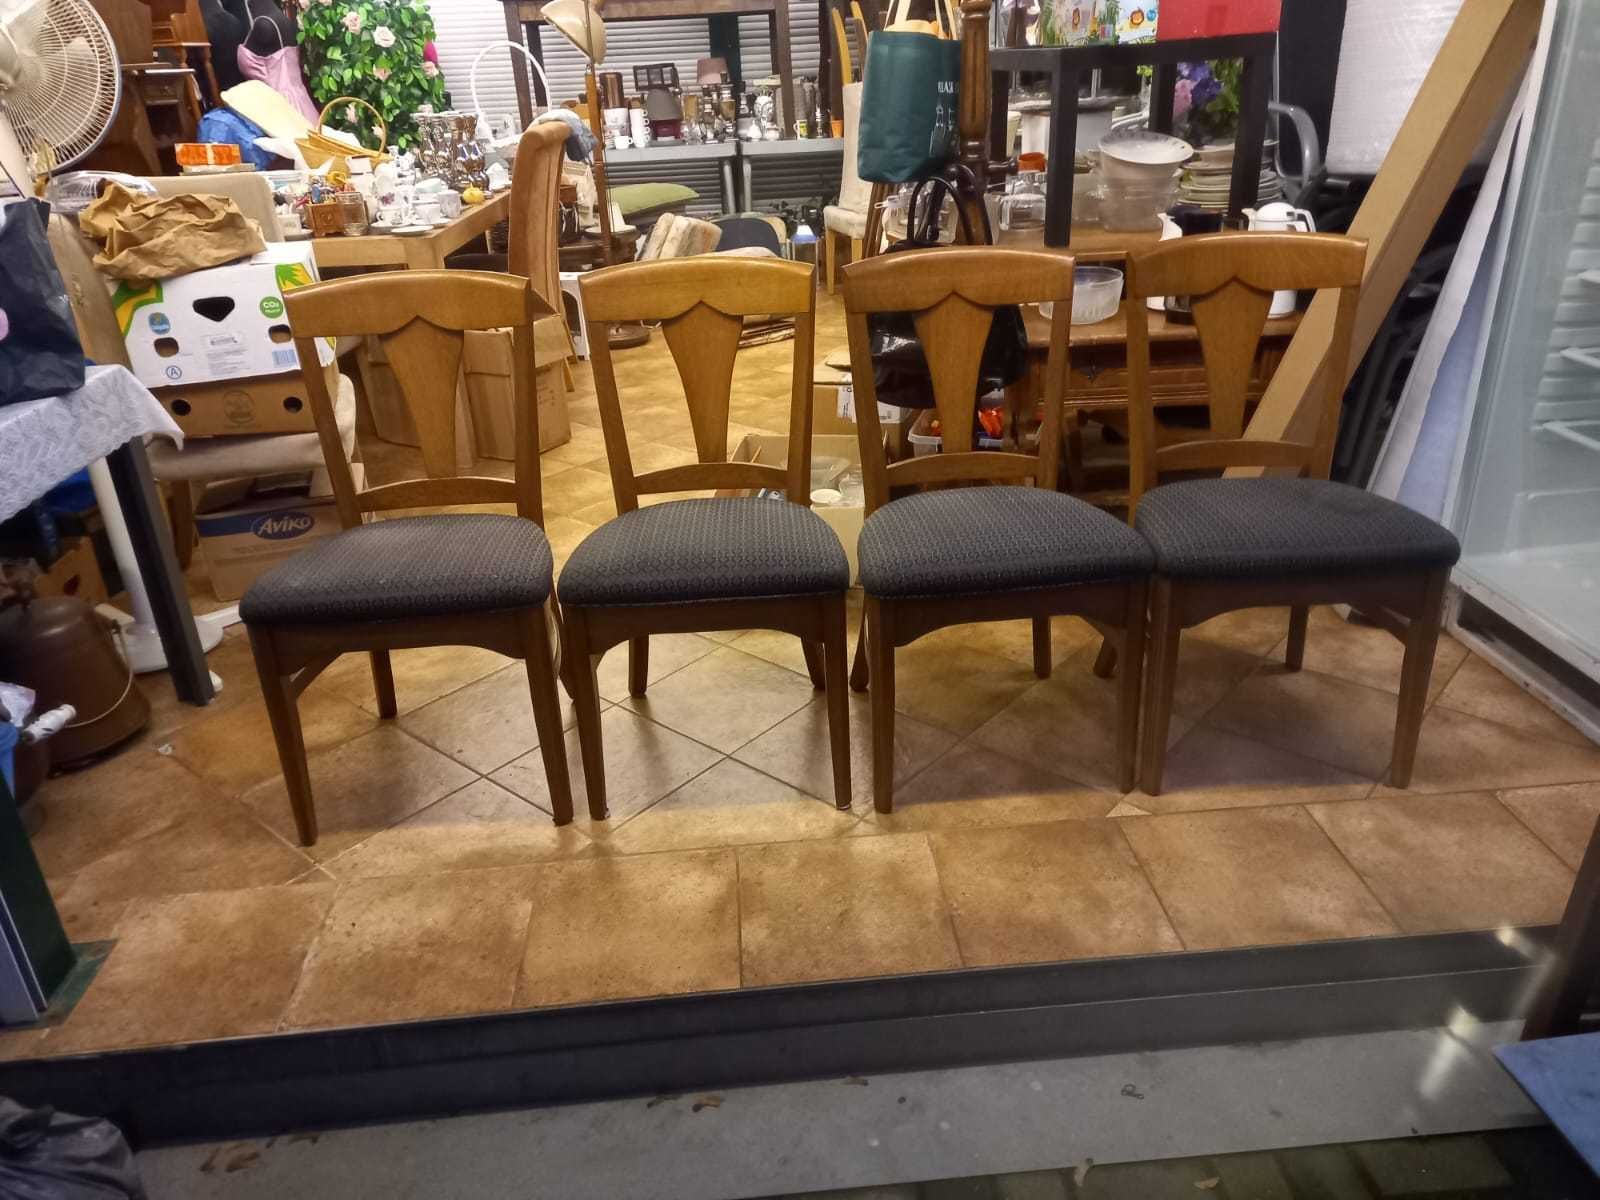 Cztery krzesła w kolorze jasnego drewna.